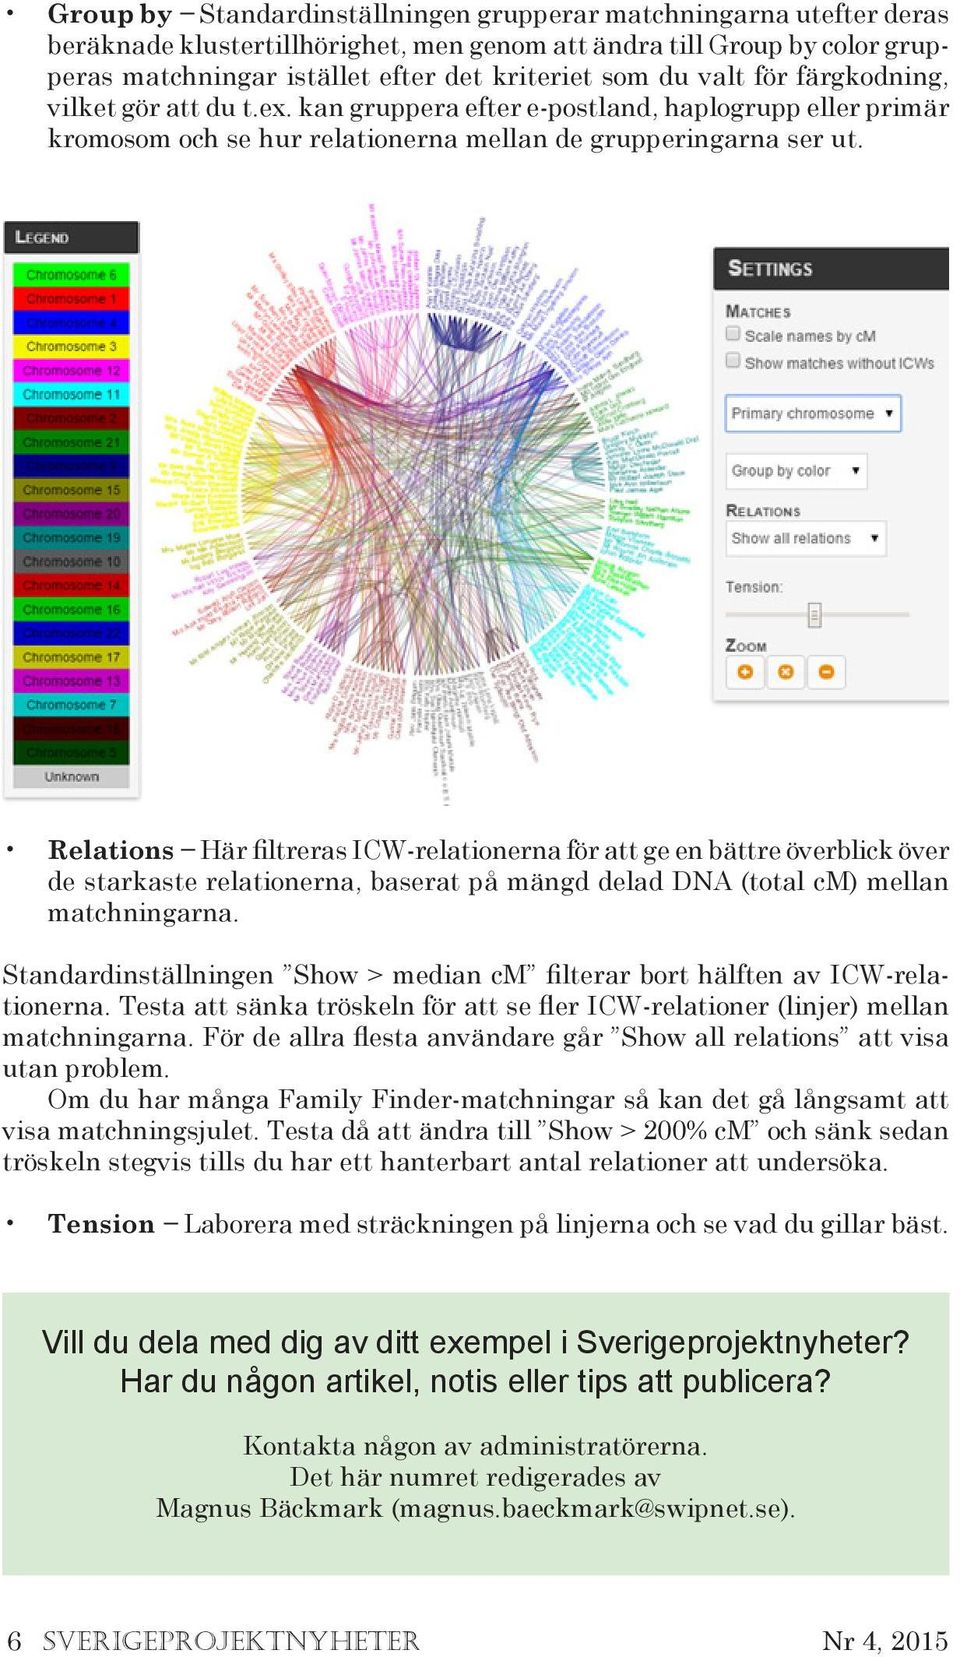 Relations Här filtreras ICW-relationerna för att ge en bättre överblick över de starkaste relationerna, baserat på mängd delad DNA (total cm) mellan matchningarna.